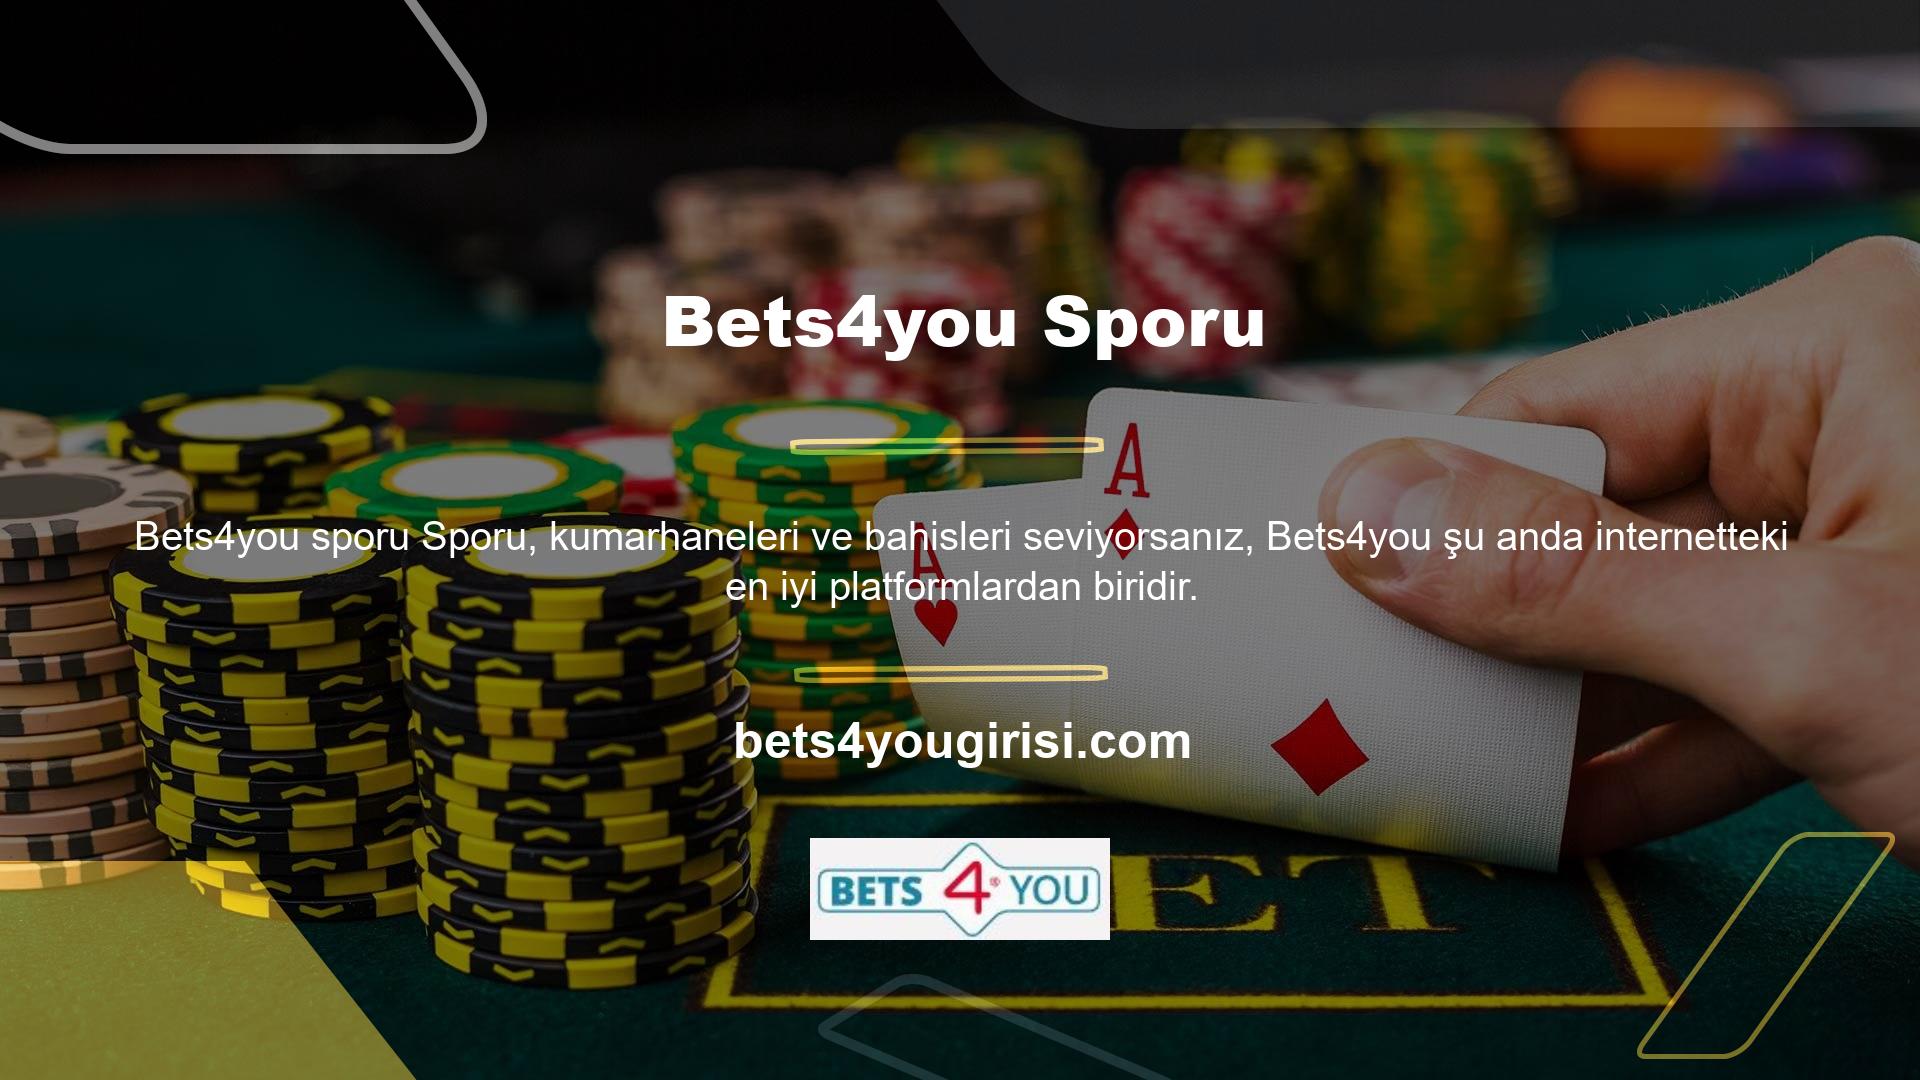 Bets4you, spor, slot, oyunlar ve diğer birçok özellik dahil olmak üzere çok çeşitli kumar seçenekleri sunar